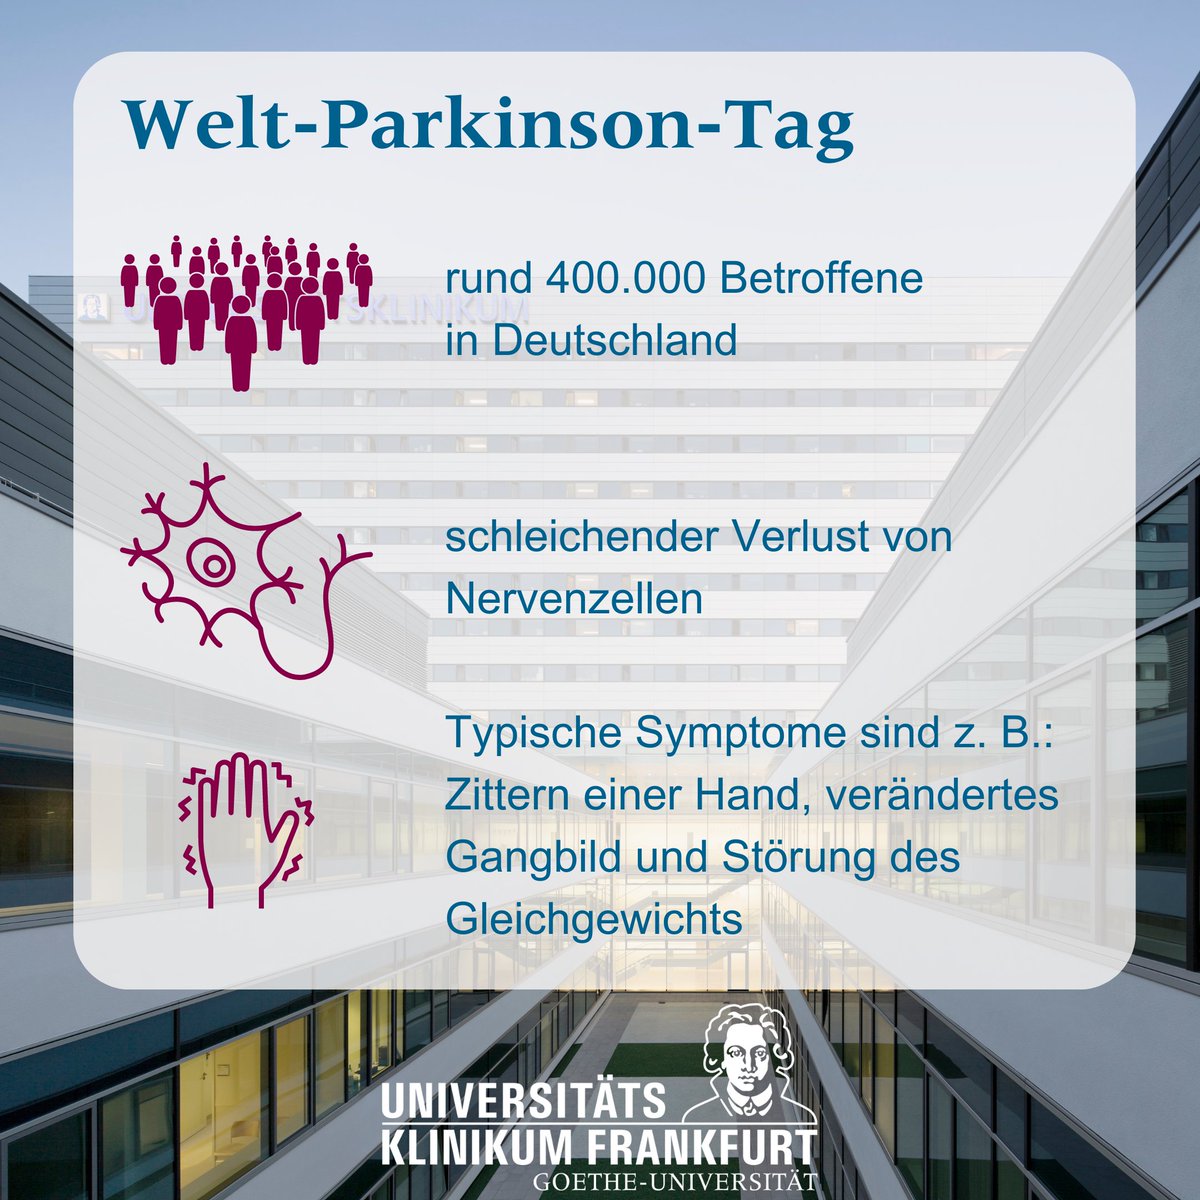 #Parkinson ist, wenn die Nervenzellen schwinden. Sie ist eine der häufigsten neurodegenerativen Erkrankungen. Prof. @CGrefkes und Prof. Czabanka vom #UKF erklären hier typische Symptome + Behandlungsmöglichkeiten ⤵️ kgu.de/news/news-deta… #WeltParkinsonTag #WorldParkinsonsDay